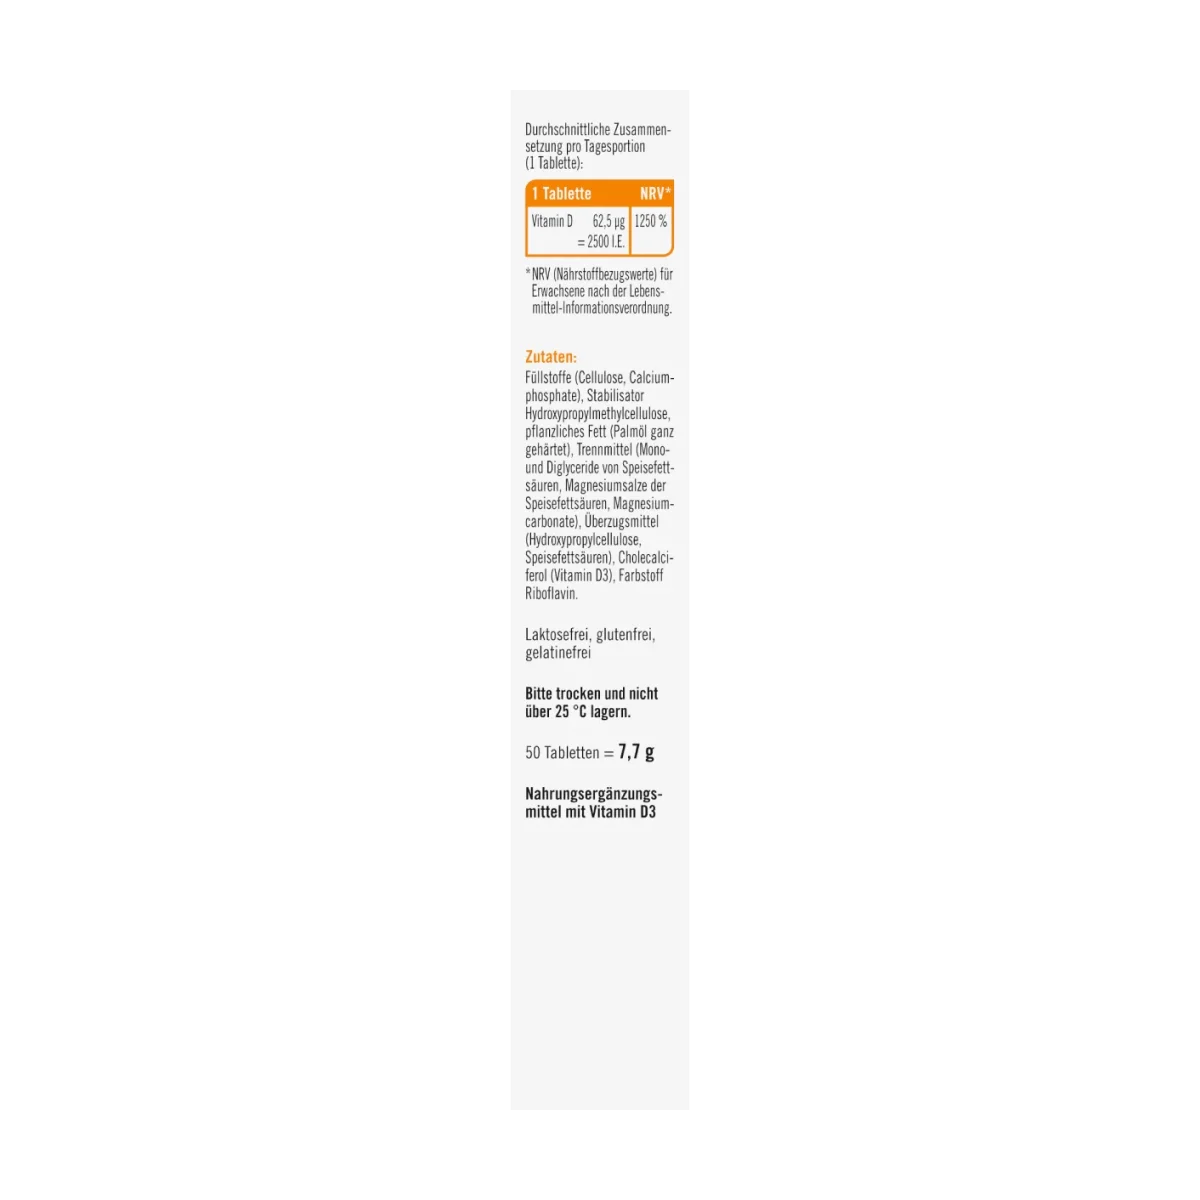 taxofit Vitamin D3 2500 I.E. Tabletten 50 Stk, 7.7 g